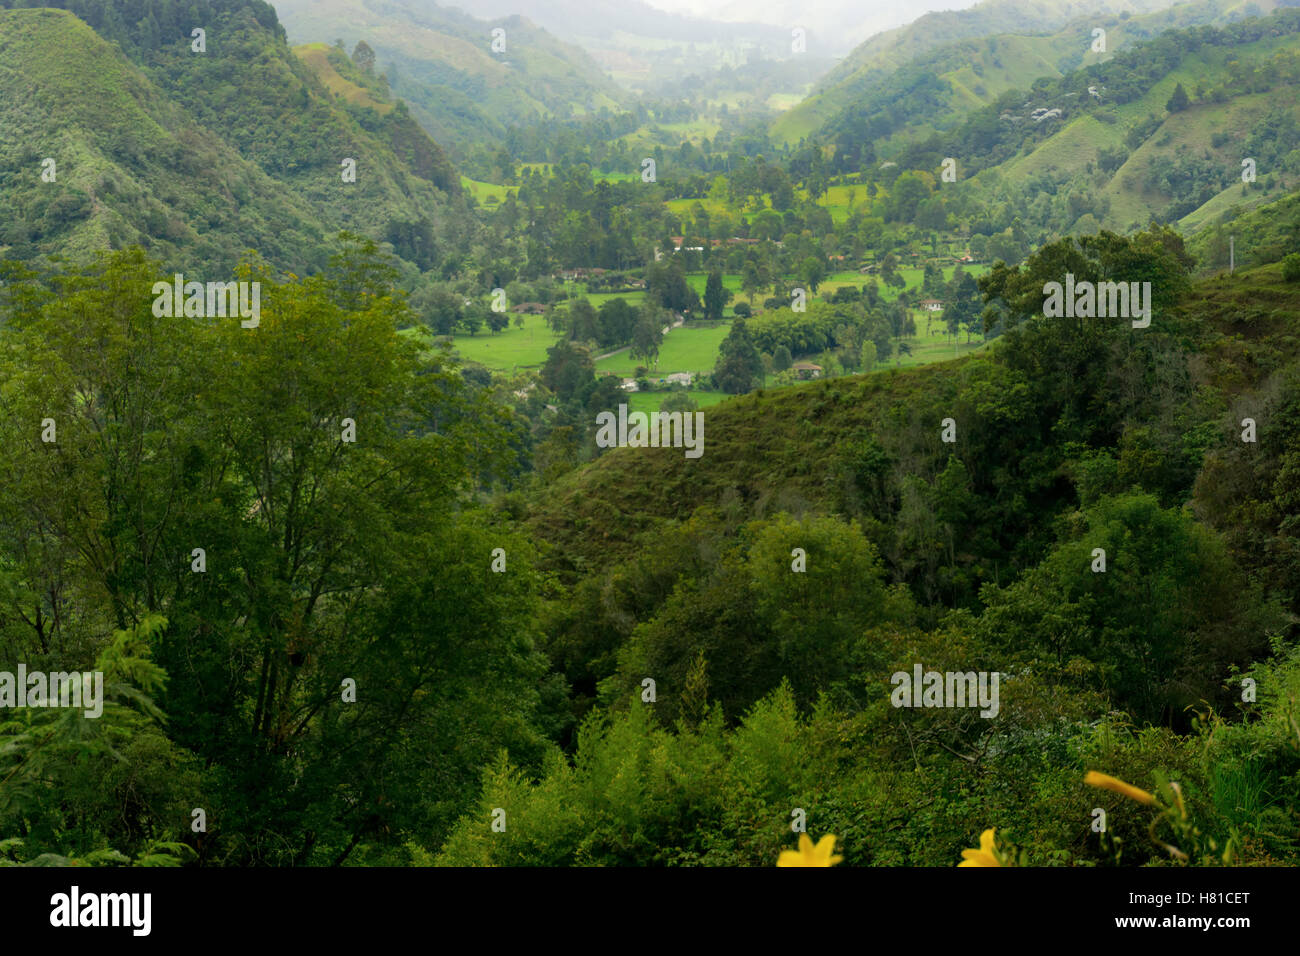 Vibrant green landscape in the Quindio department near Salento, Colombia Stock Photo